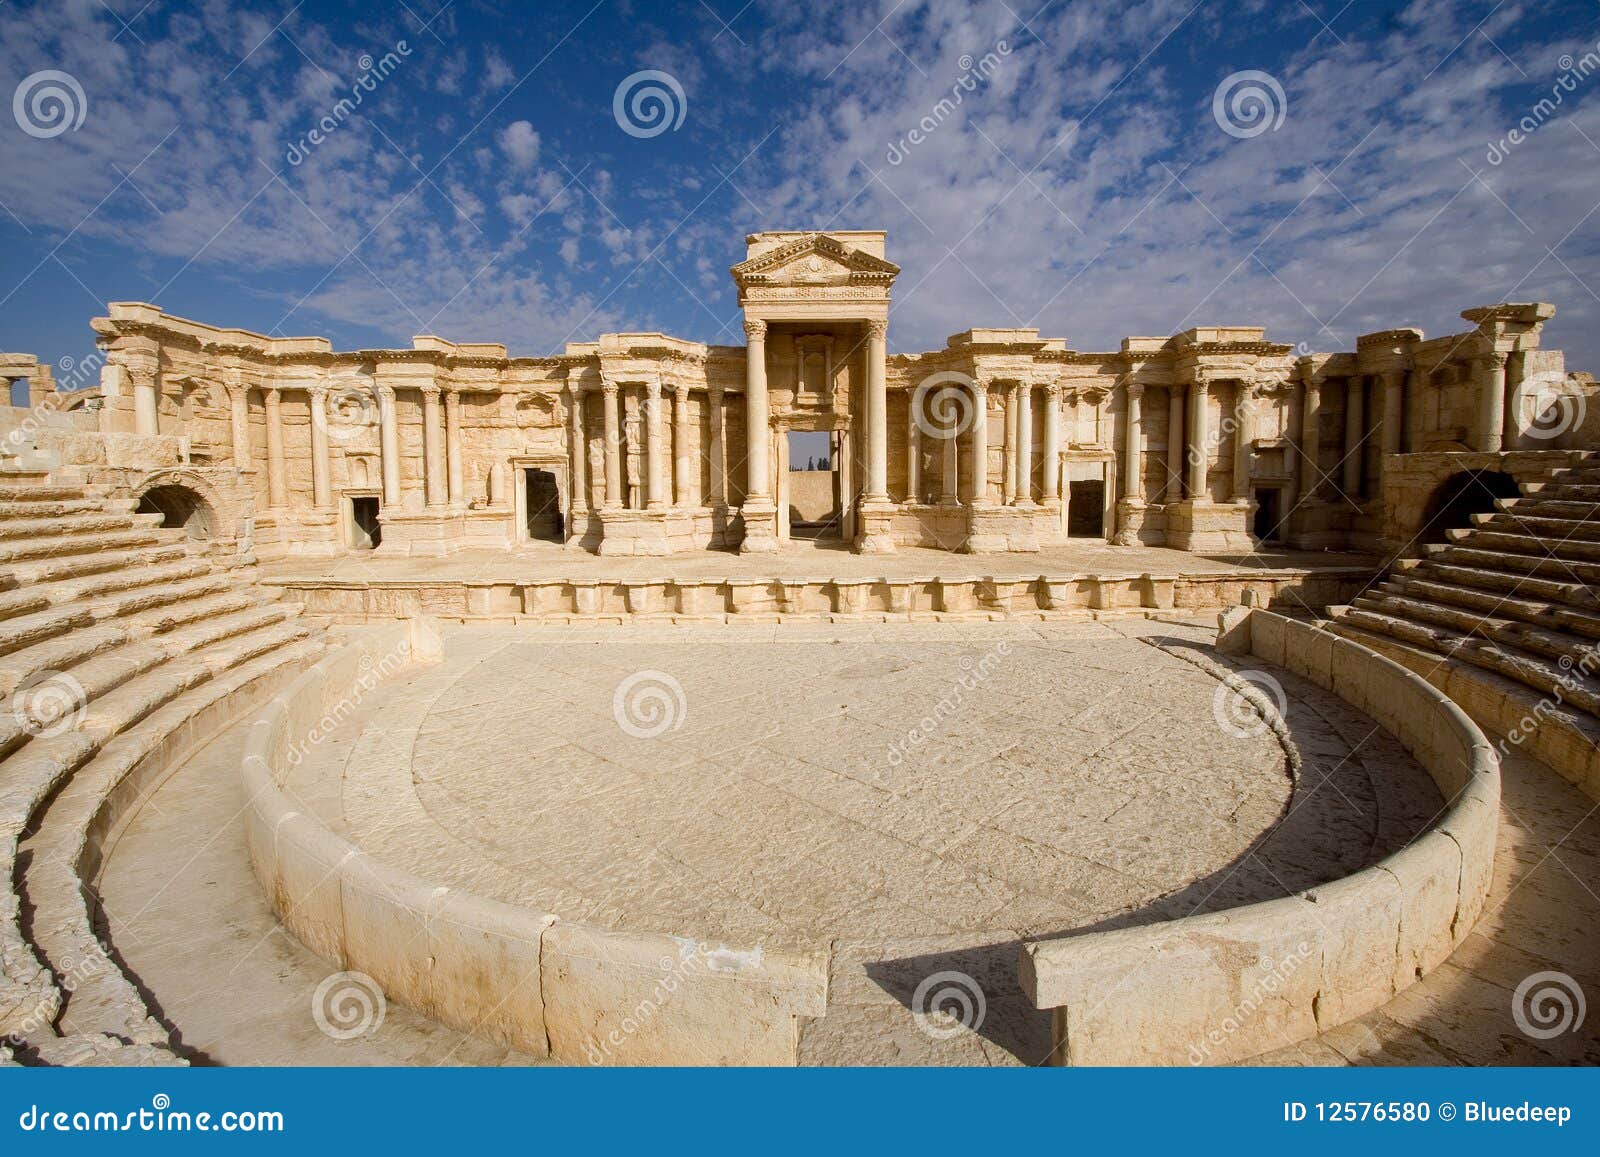 antique roman theatre of palmyra syria